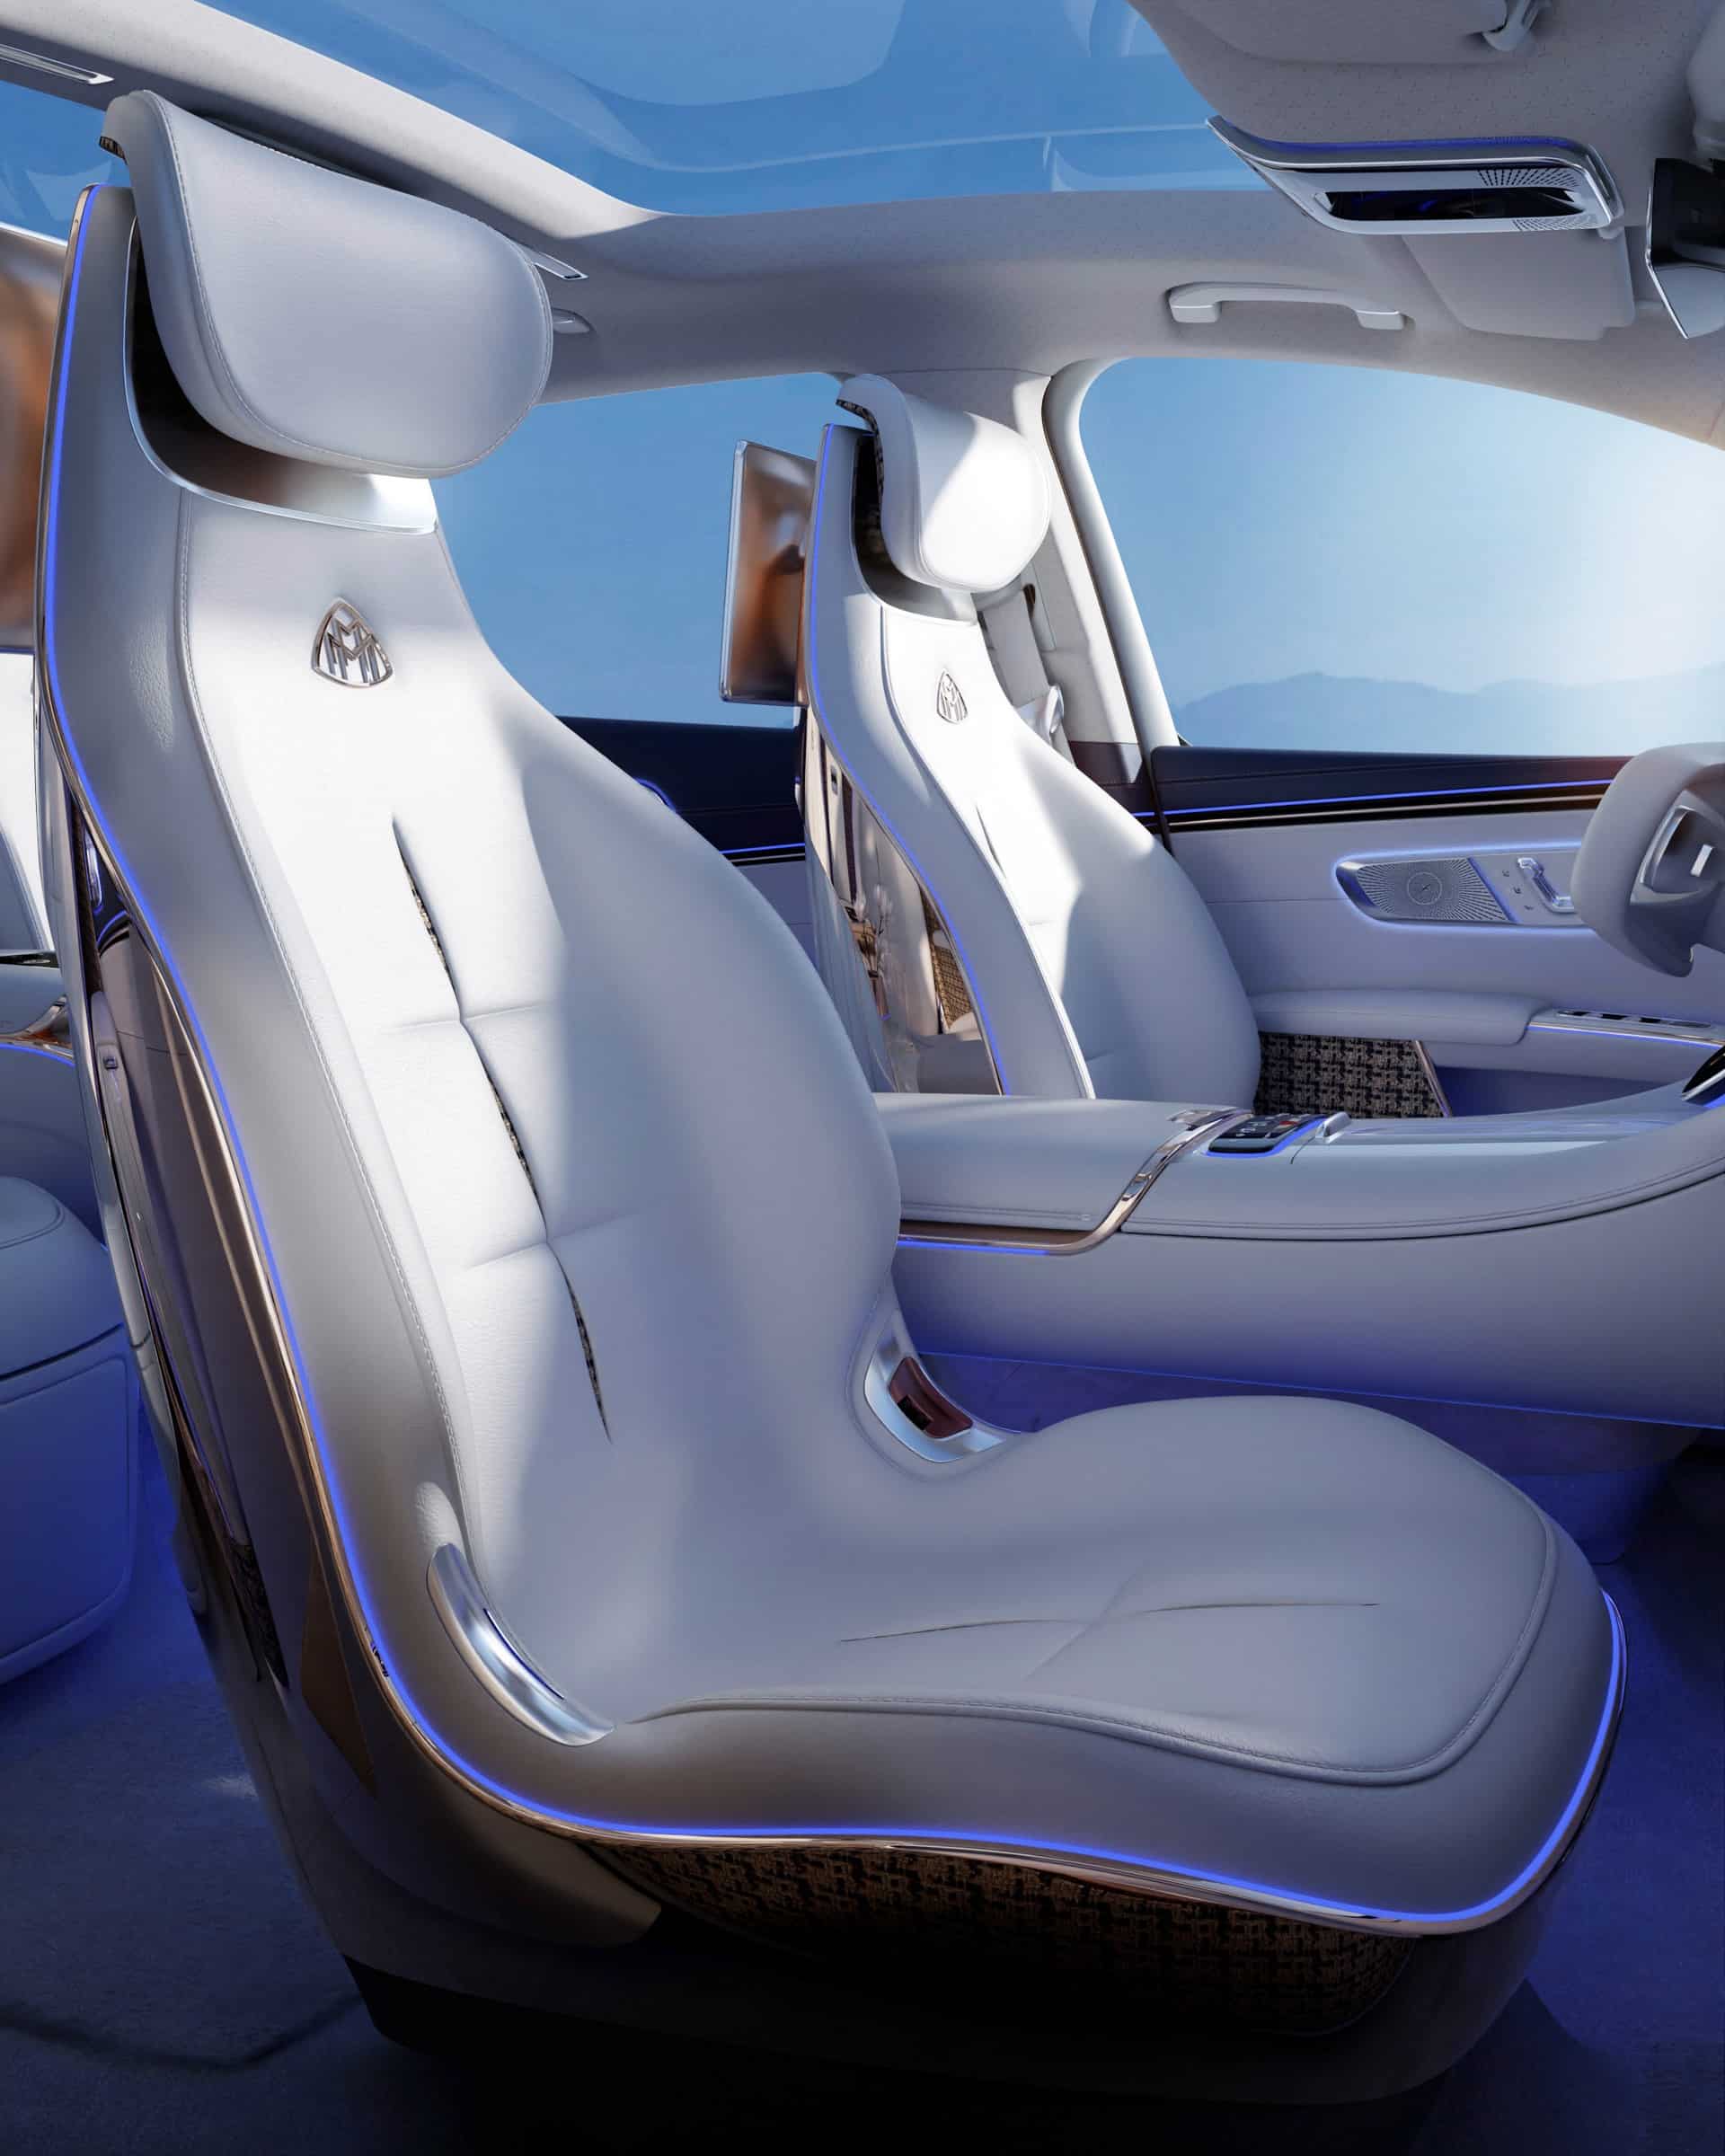 Mercedes-Maybach EQS SUV Concept - SUV siêu sang chạy điện cho tương lai mercedes-maybach-eqs-suv-concept-213.jpeg